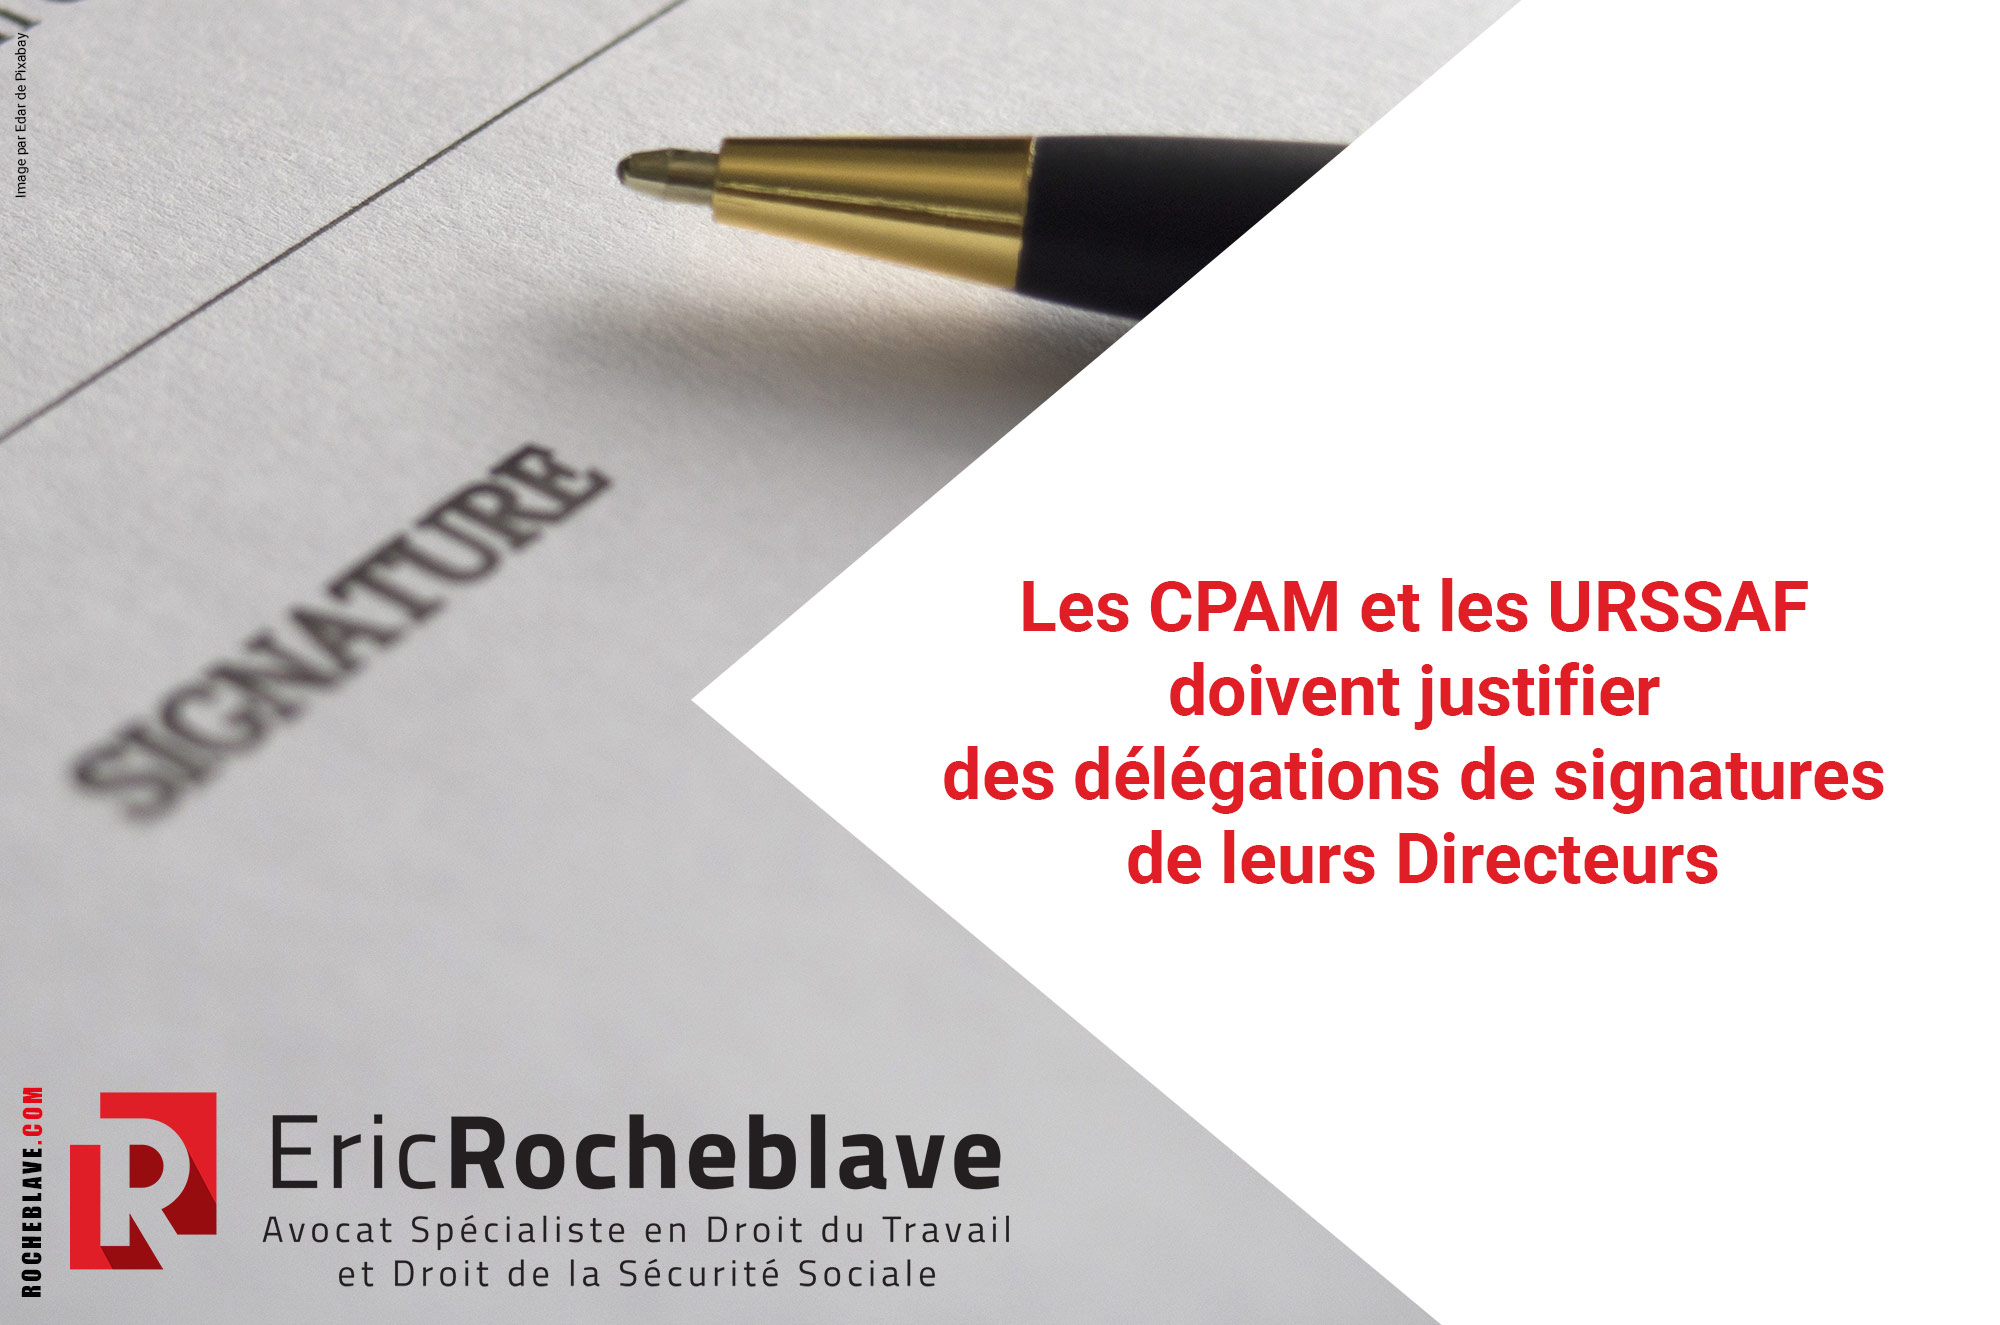 Les CPAM et les URSSAF doivent justifier des délégations de signatures de leurs Directeurs